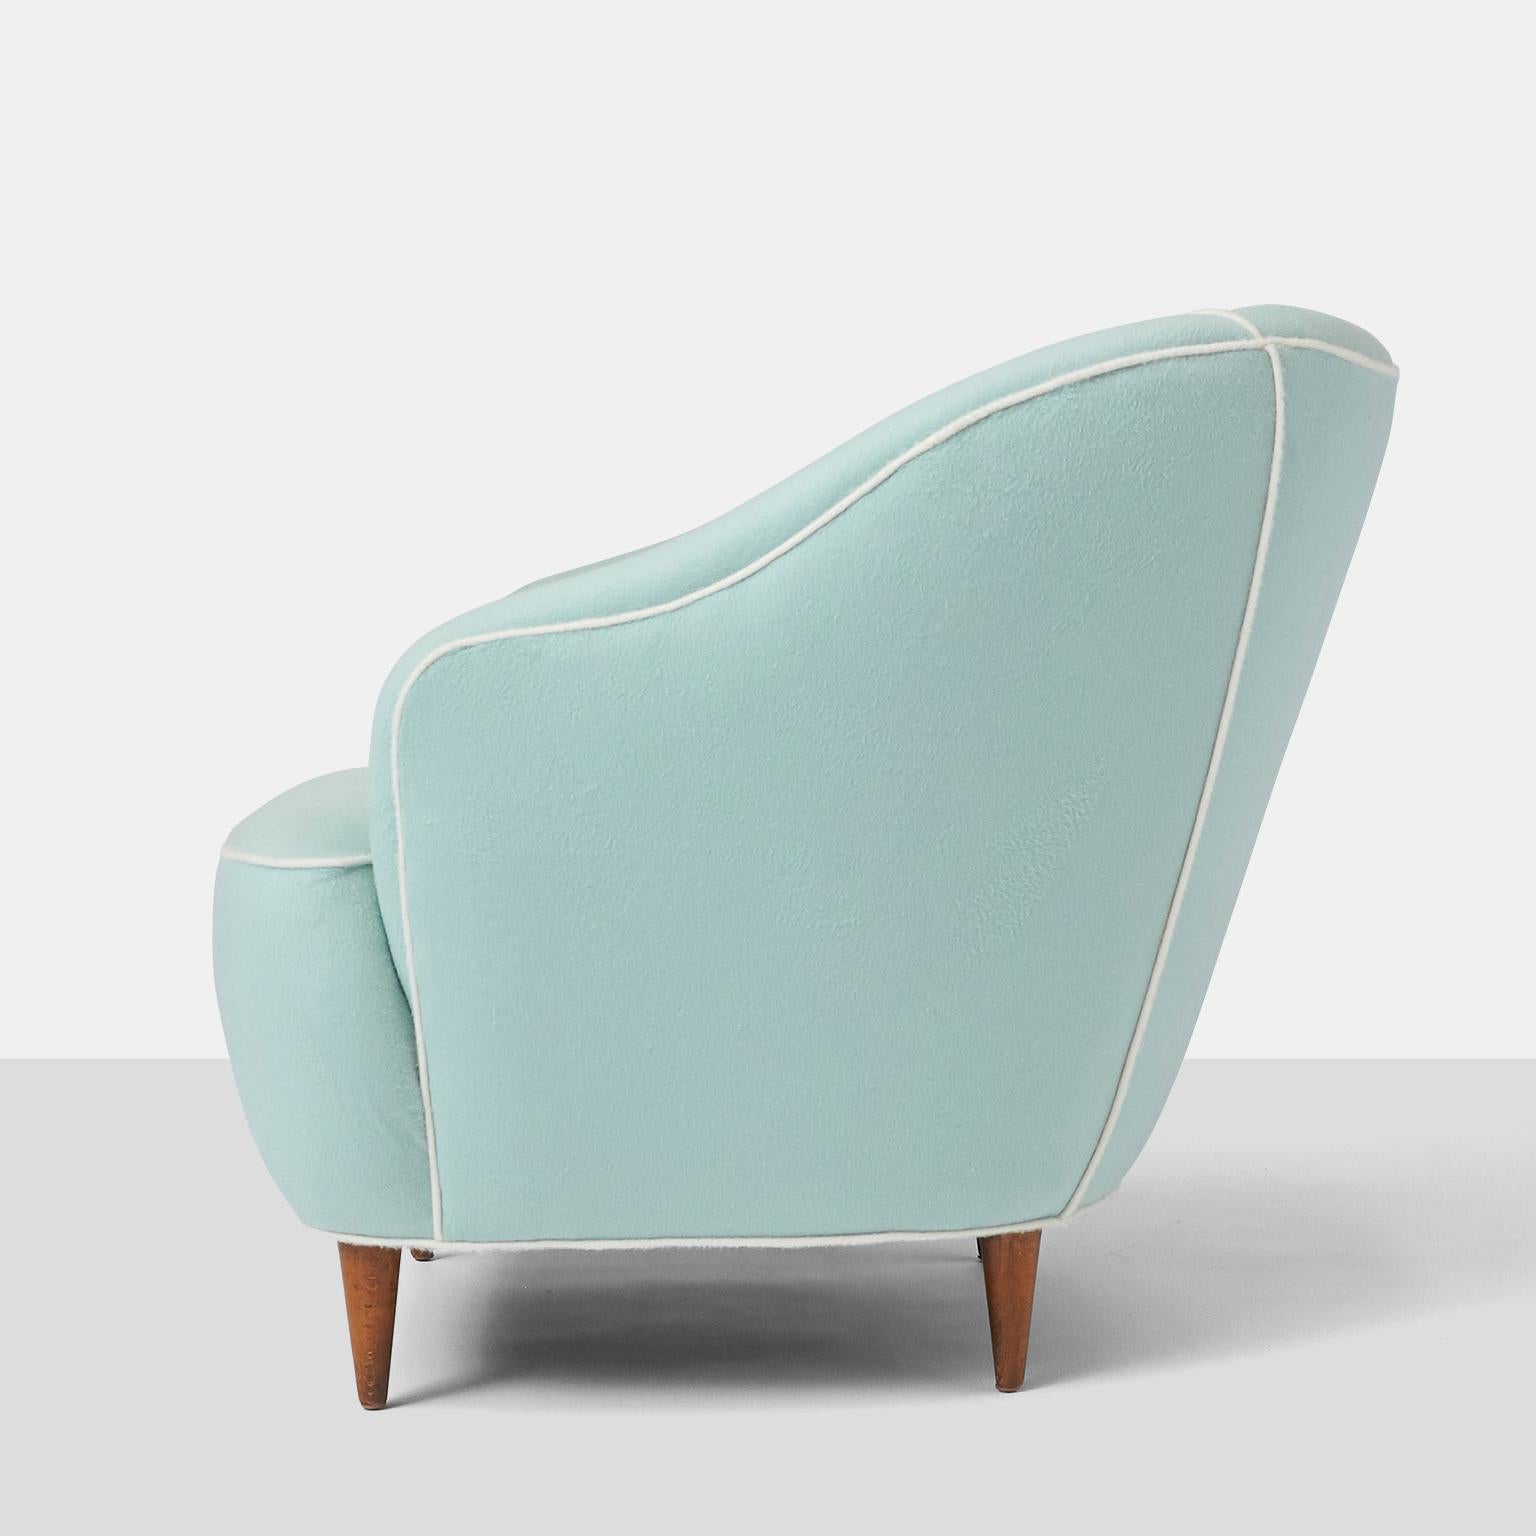 Mid-20th Century Pair of Club Chairs by Gio Ponti for Casa Giardino